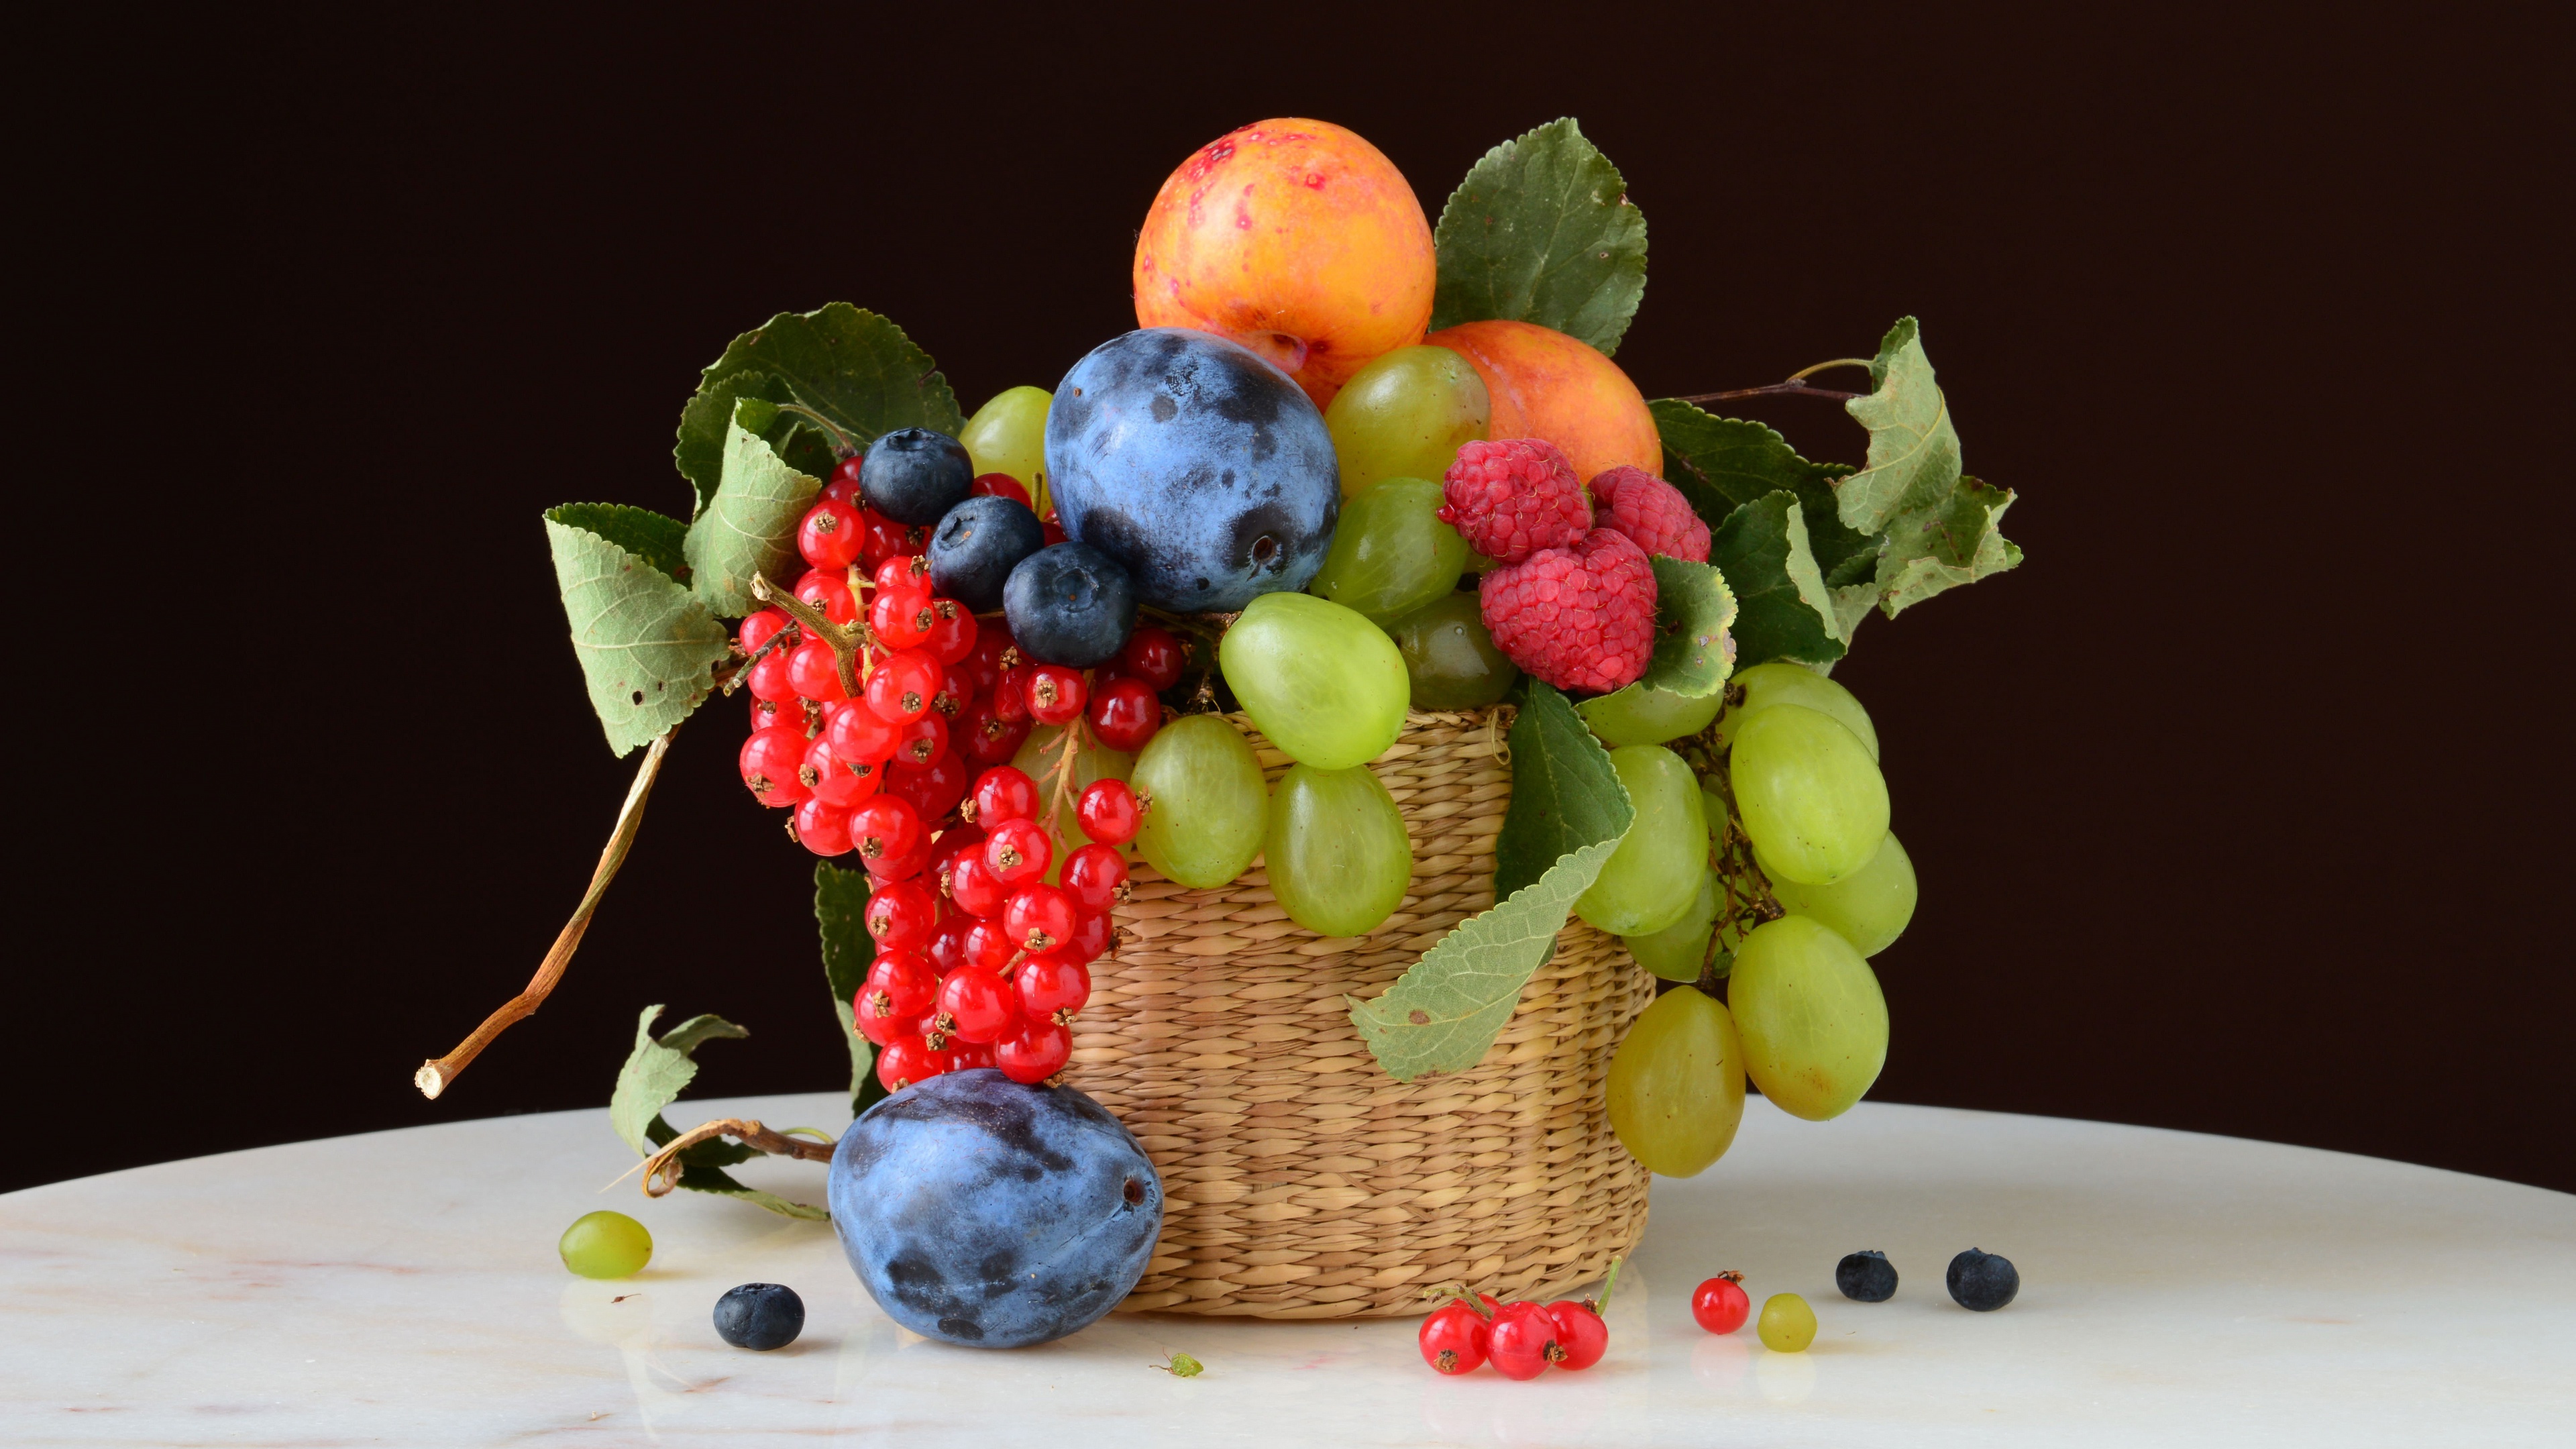 992302 免費下載壁紙 食物, 静物, 蓝莓, 醋栗, 葡萄, 油桃, 李子, 树莓 屏保和圖片